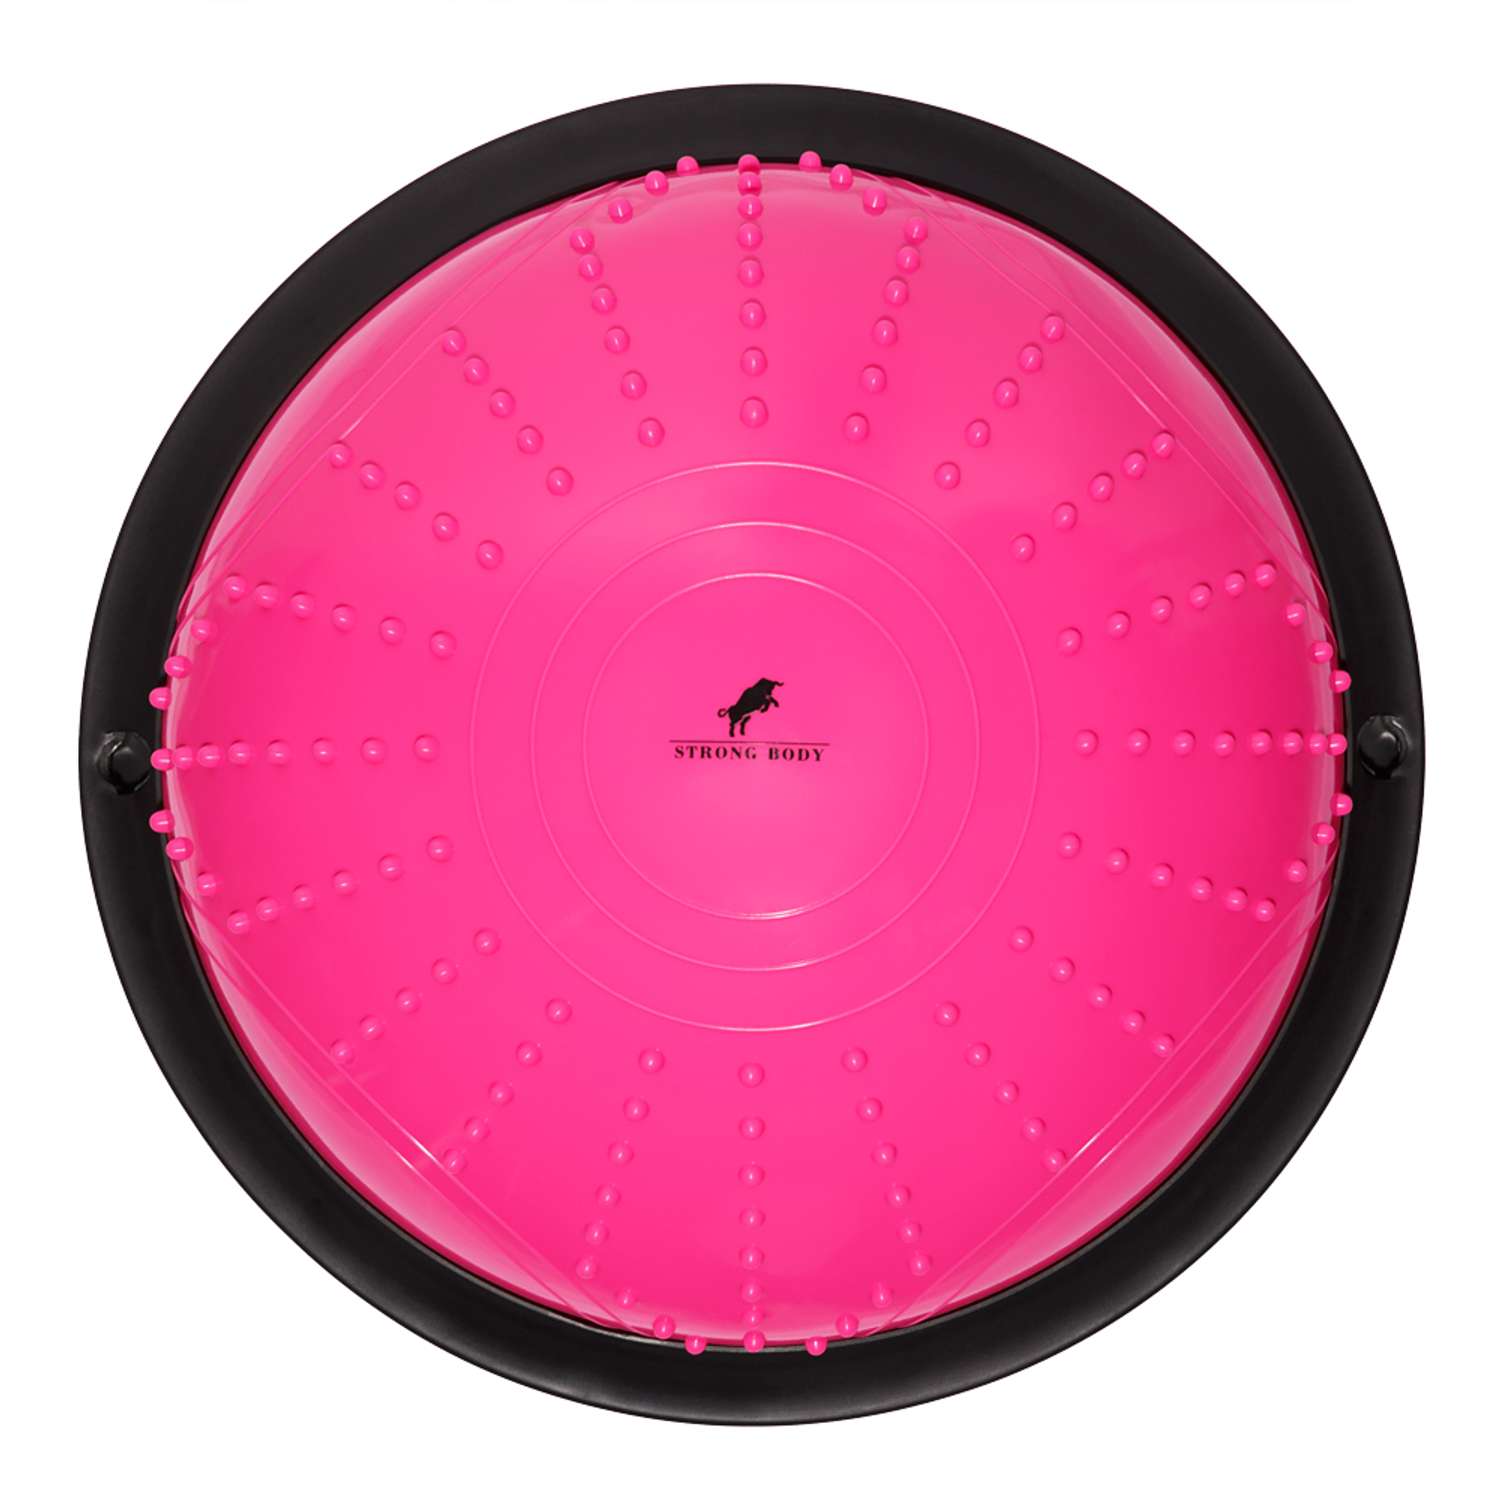 Балансировочная полусфера BOSU STRONG BODY в комплекте со съемными эспандерами розовая - фото 5